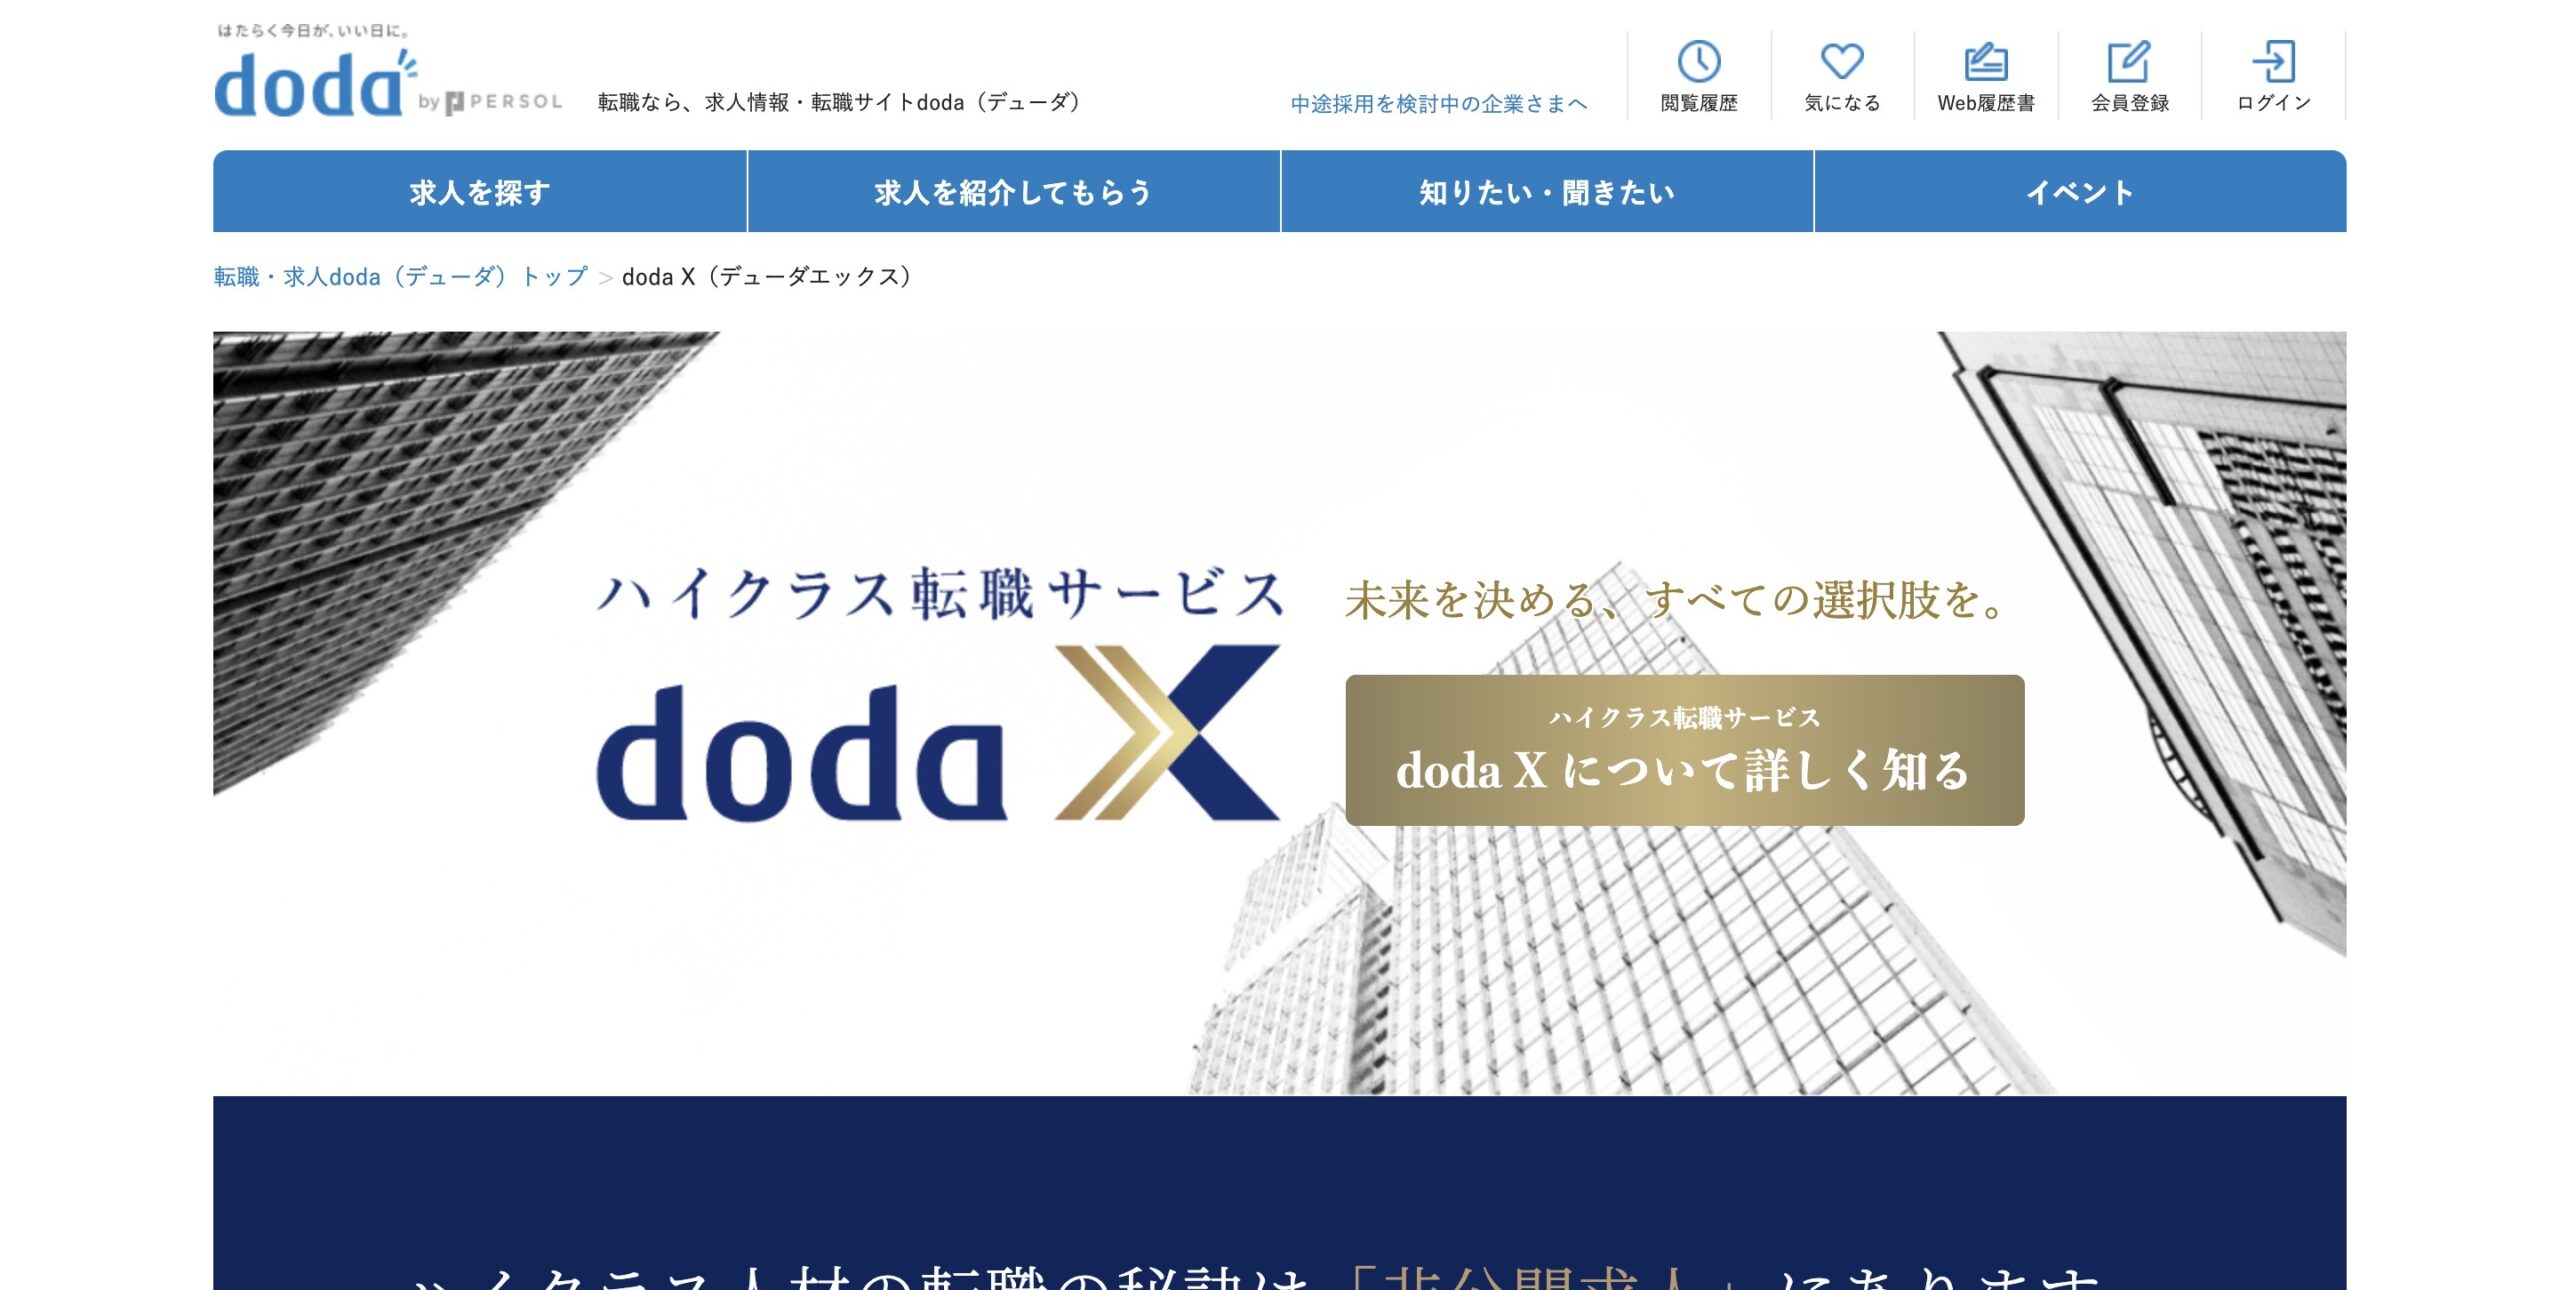 dodaX公式